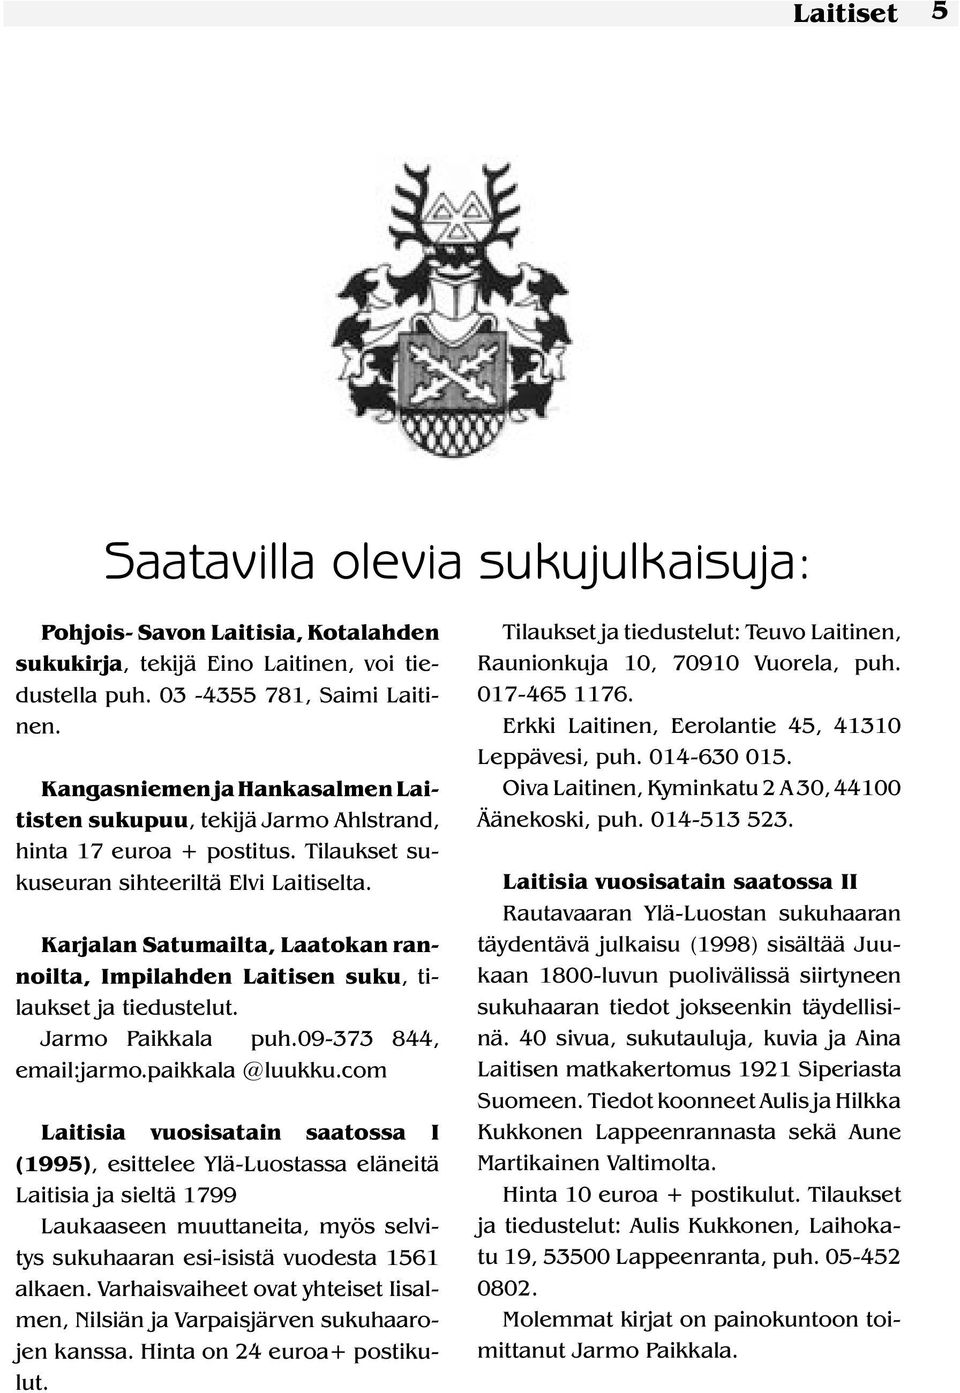 Karjalan Satumailta, Laatokan rannoilta, Impilahden Laitisen suku, tilaukset ja tiedustelut. Jarmo Paikkala puh.09-373 844, email:jarmo.paikkala @luukku.